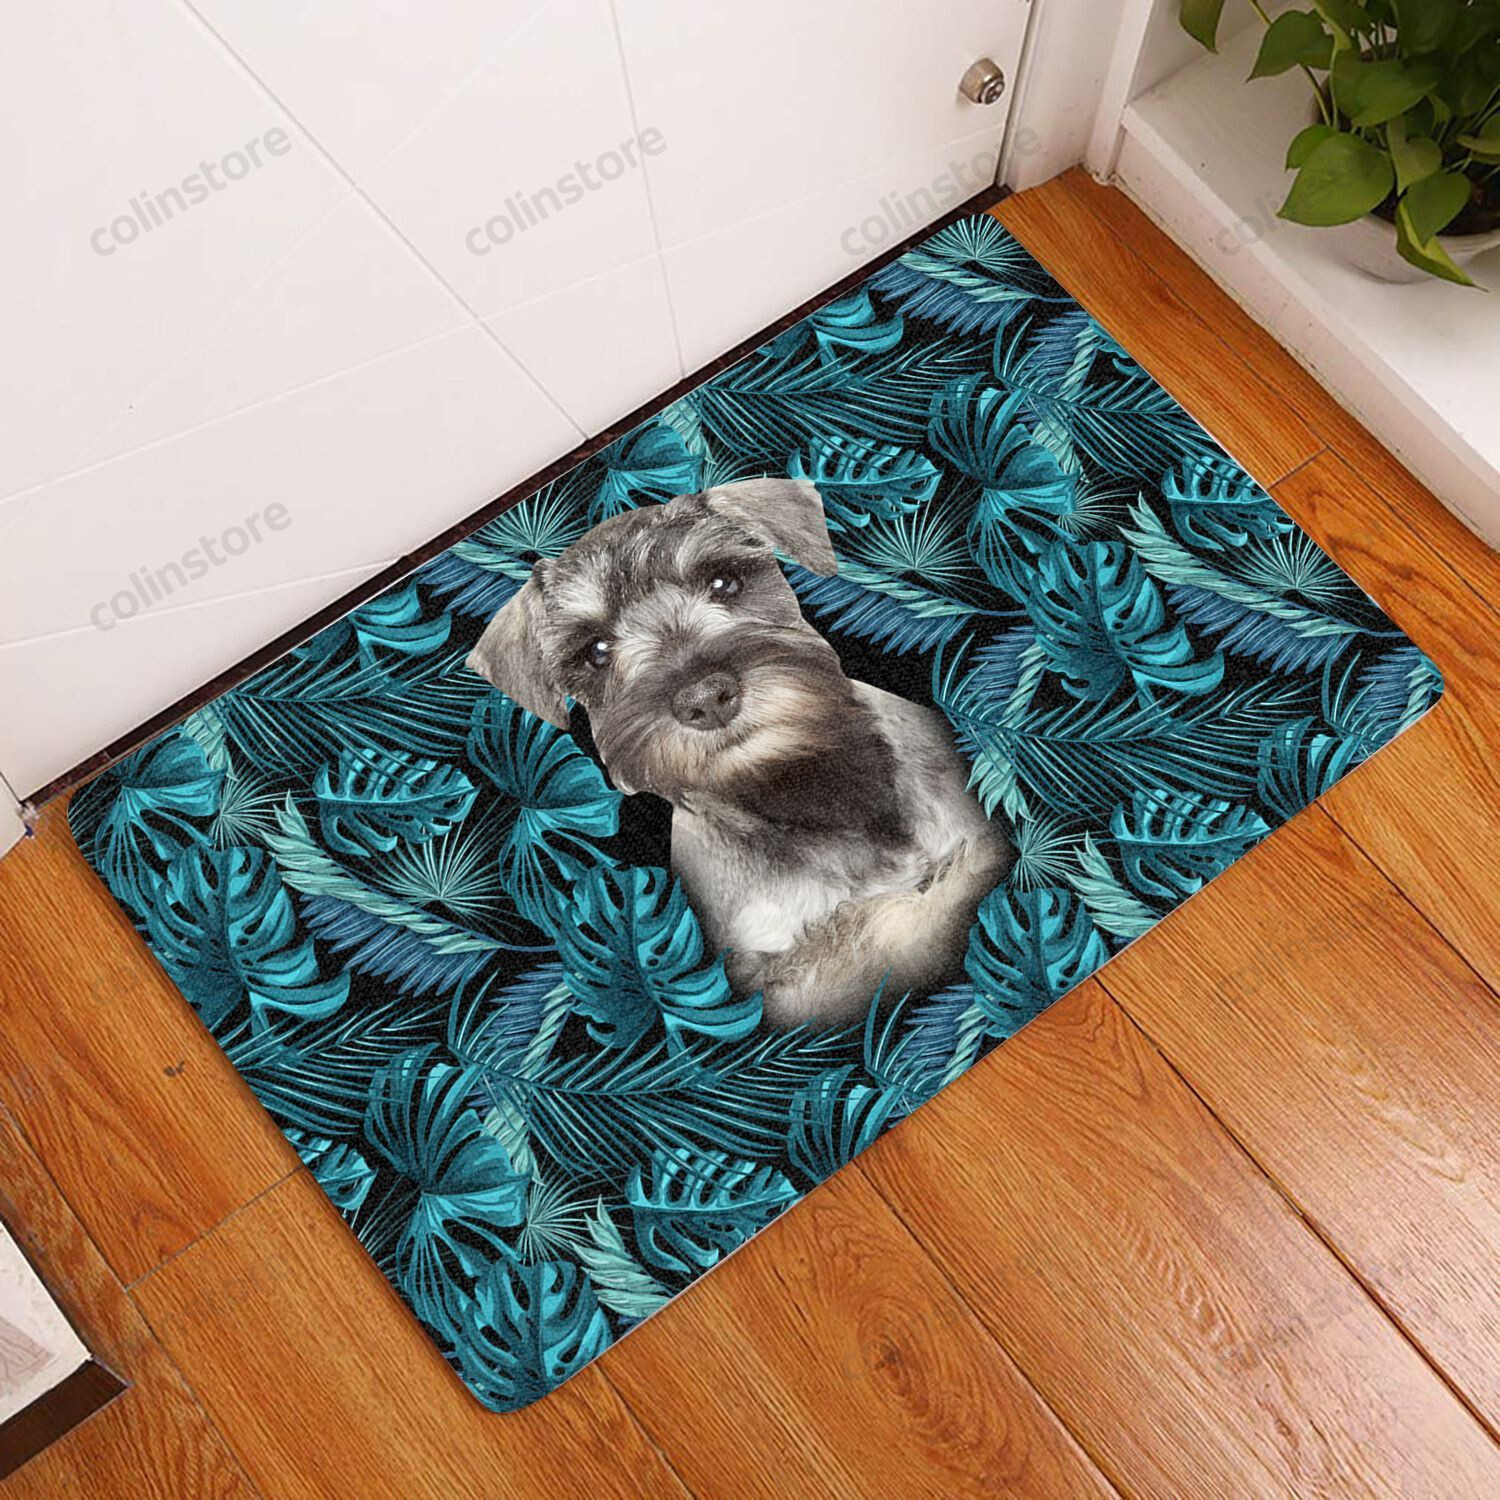 Amazing Miniature Schnauzer - Dog Doormat Welcome Mat